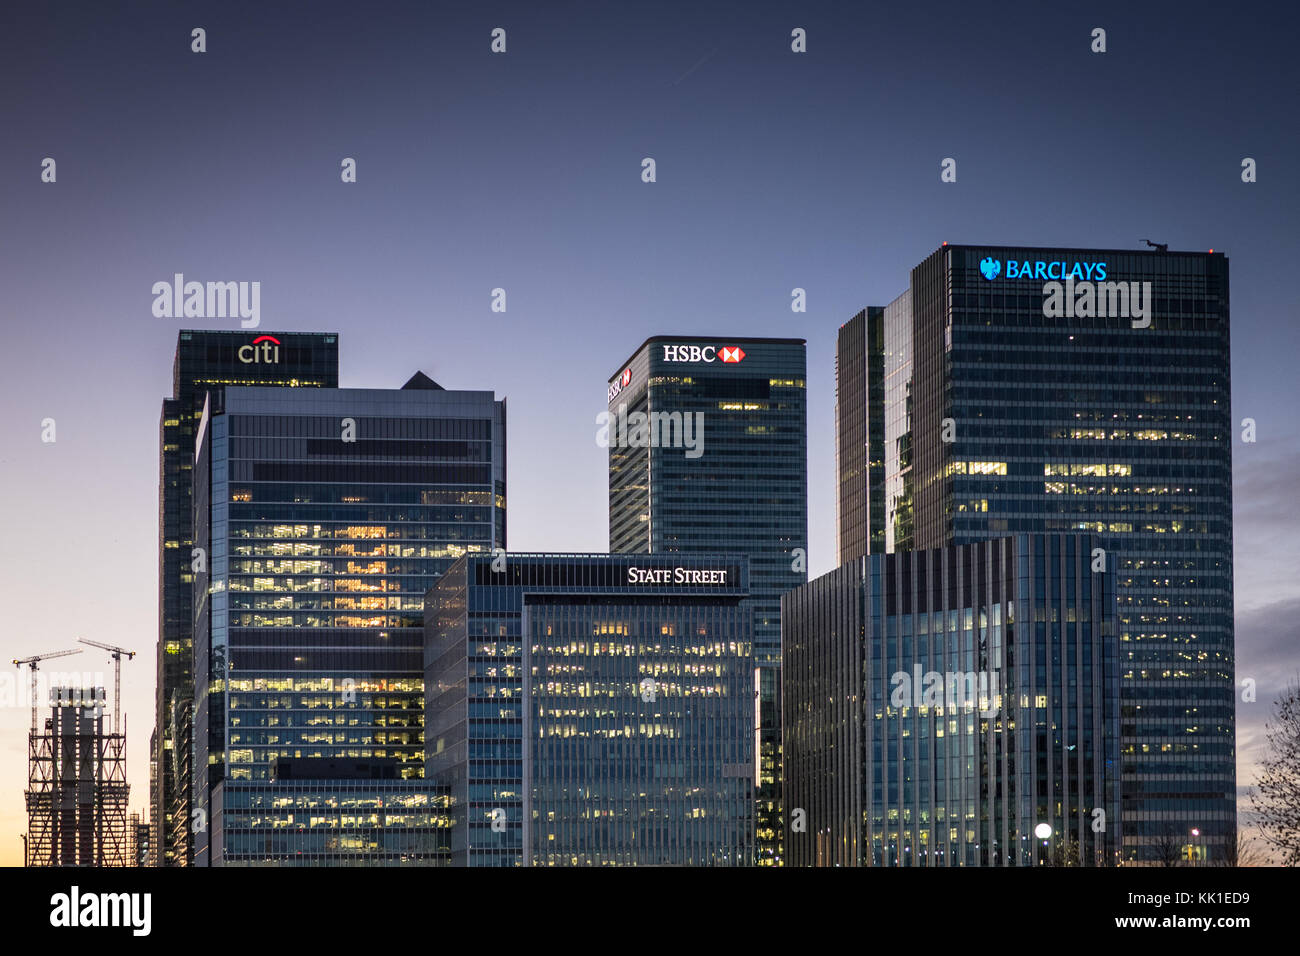 Les banques de Londres, Canary Wharf au crépuscule - Barclays, HSBC, State Street, CitiBank Banque D'Images